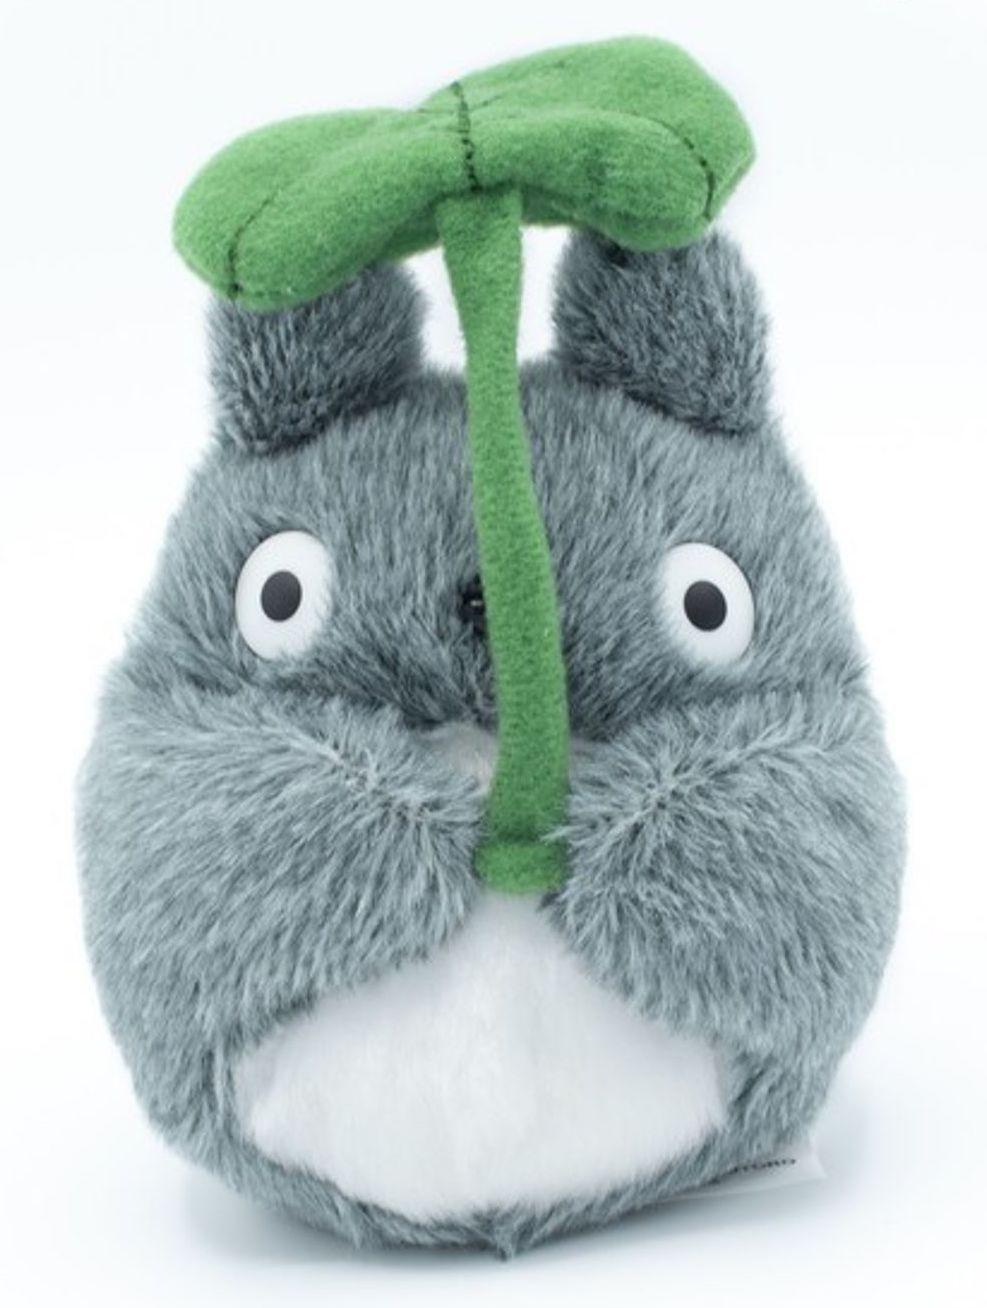 STUDIO GHIBLI - Totoro & Leaf - Plush Toy 13cm